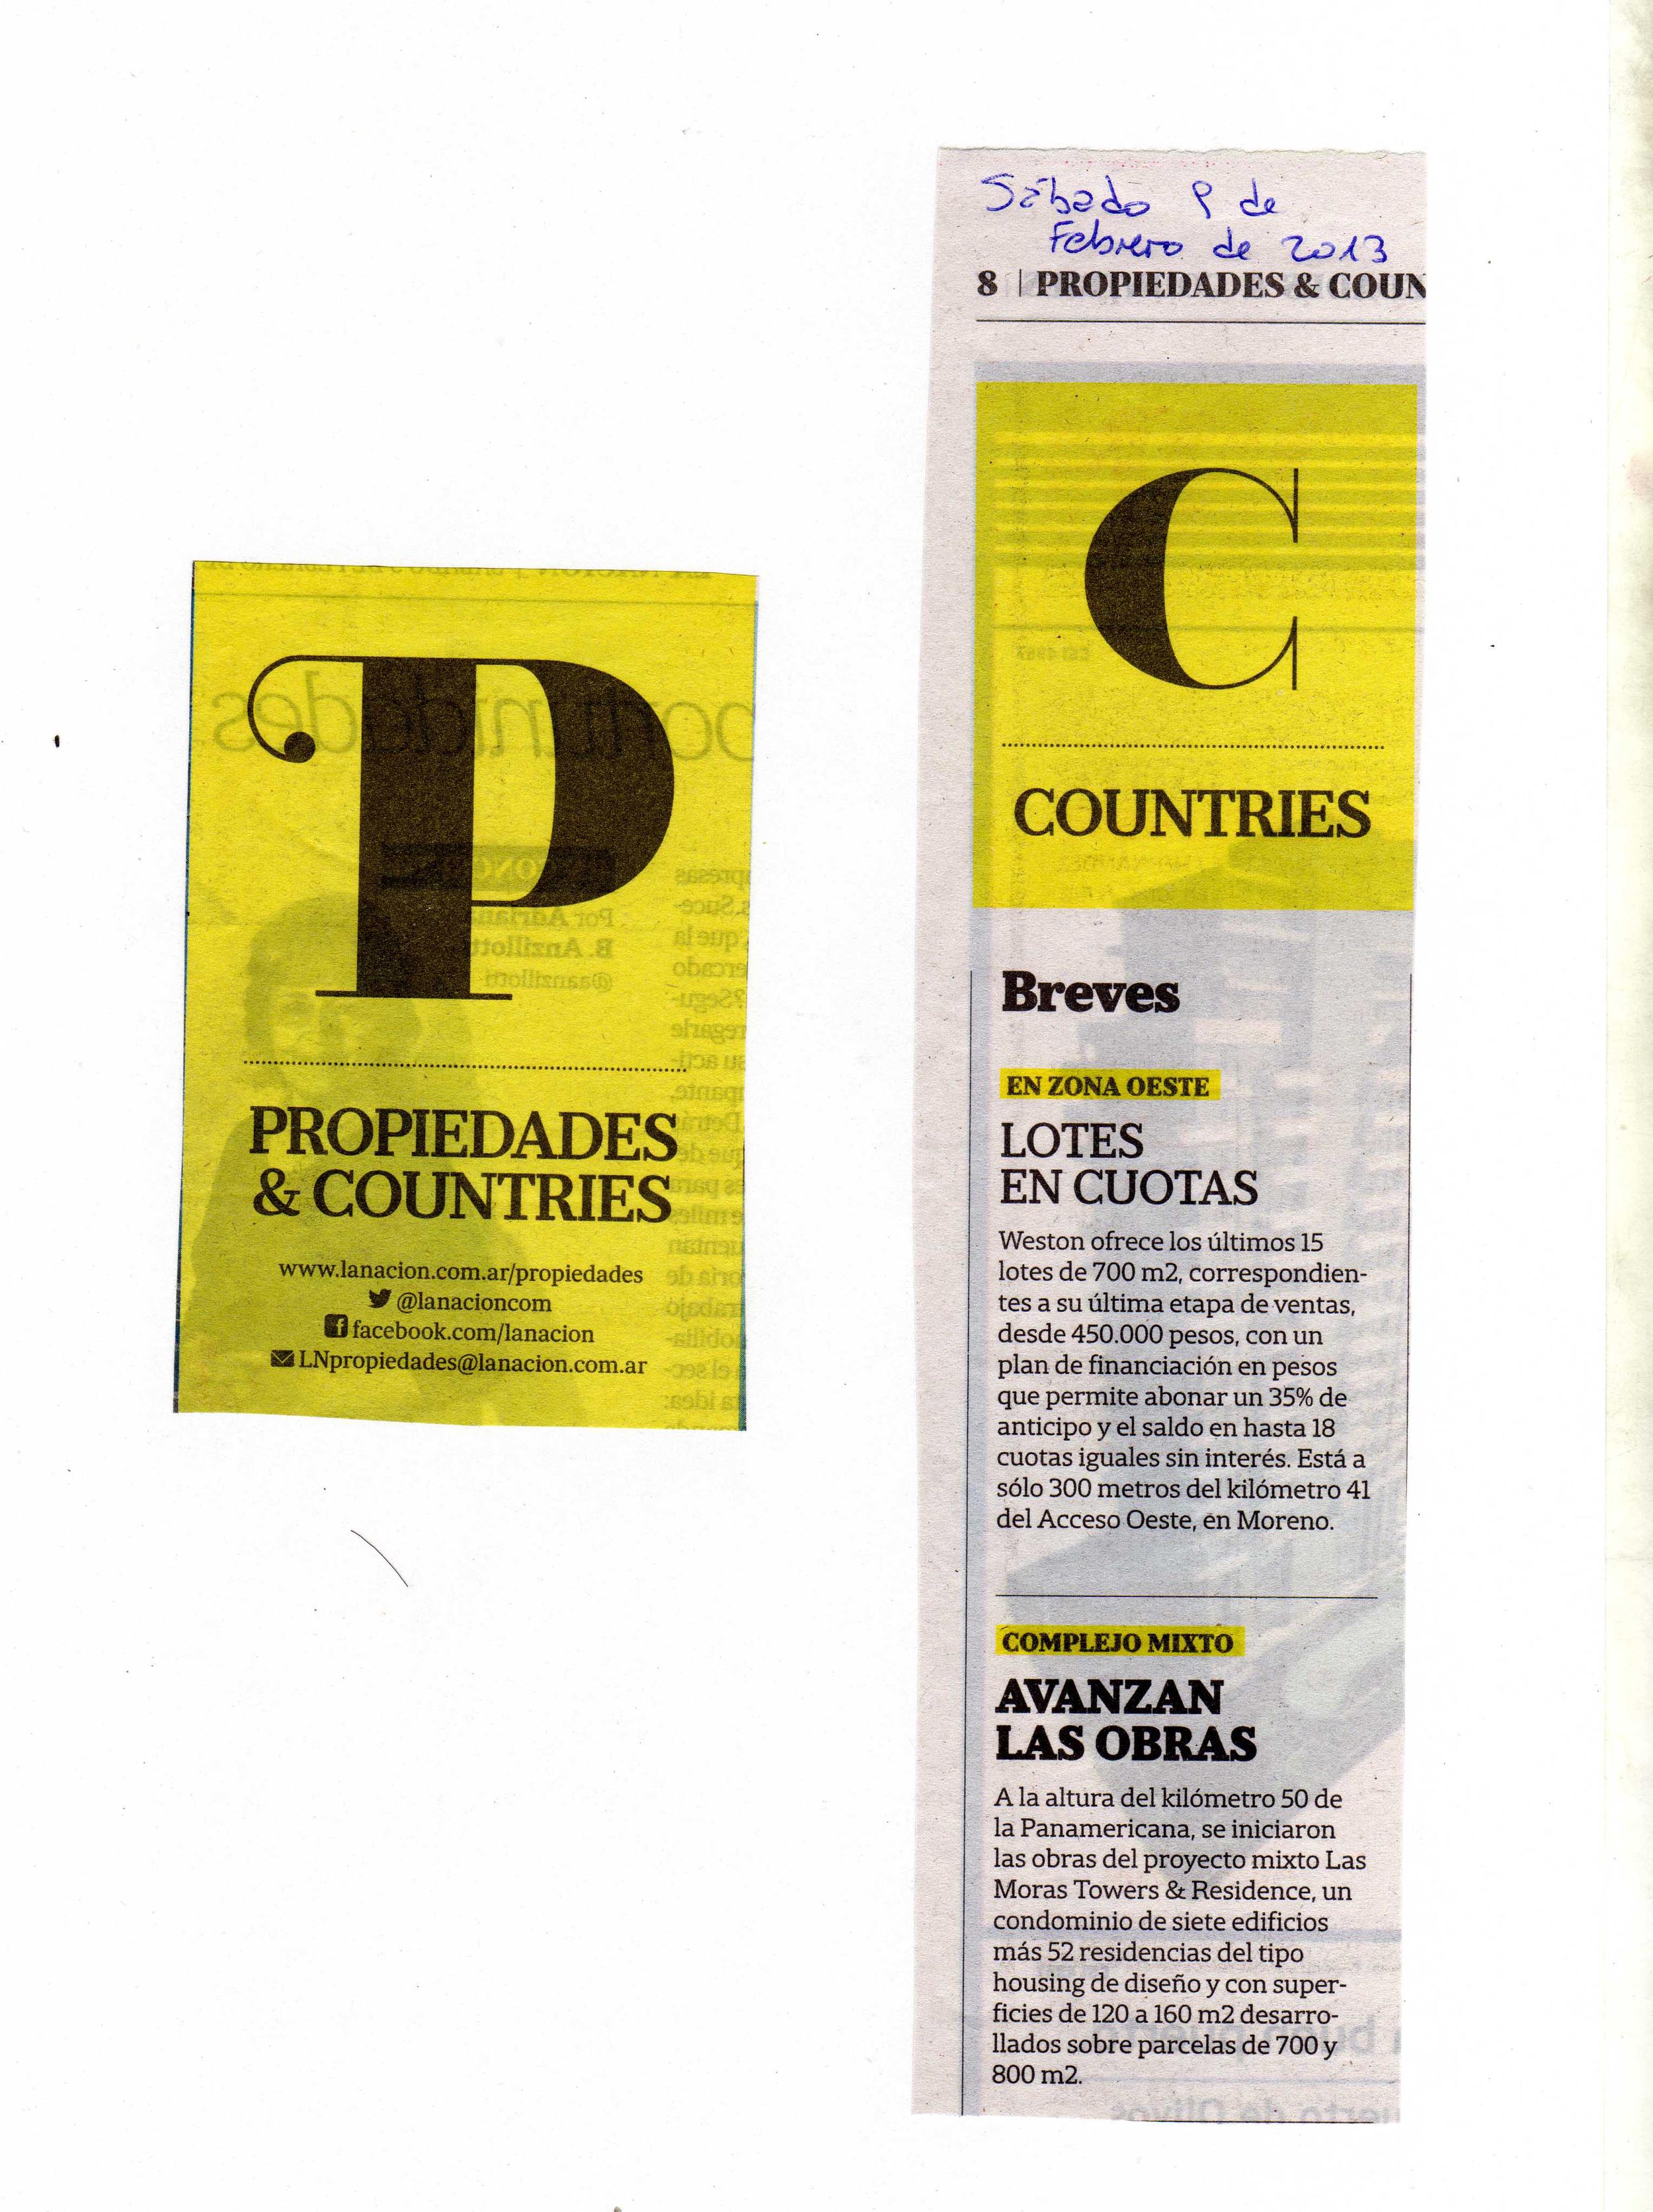 Diario La Nación Propiedades, 9 de febrero de 2013